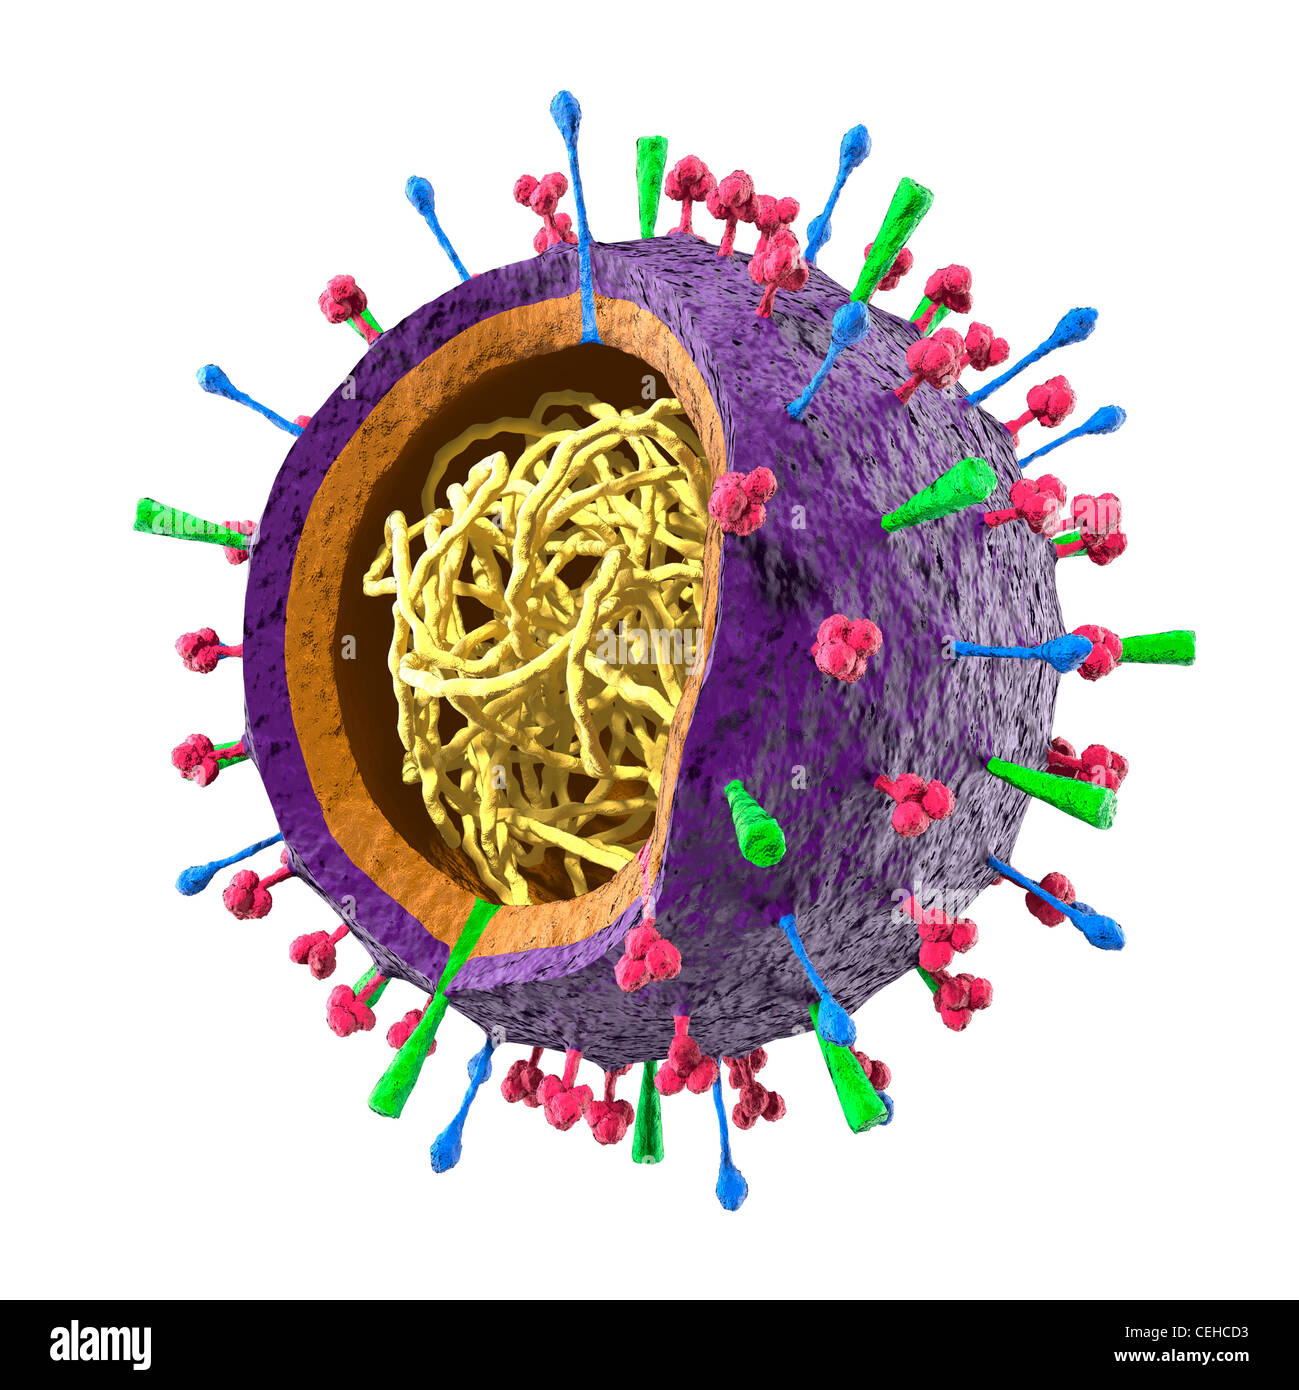 Farbige Partikel des Grippe-Virus H5N1 H1N1 Influenza A Virus - Virion Struktur. 3D Illustration isoliert auf weißem Hintergrund Stockfoto